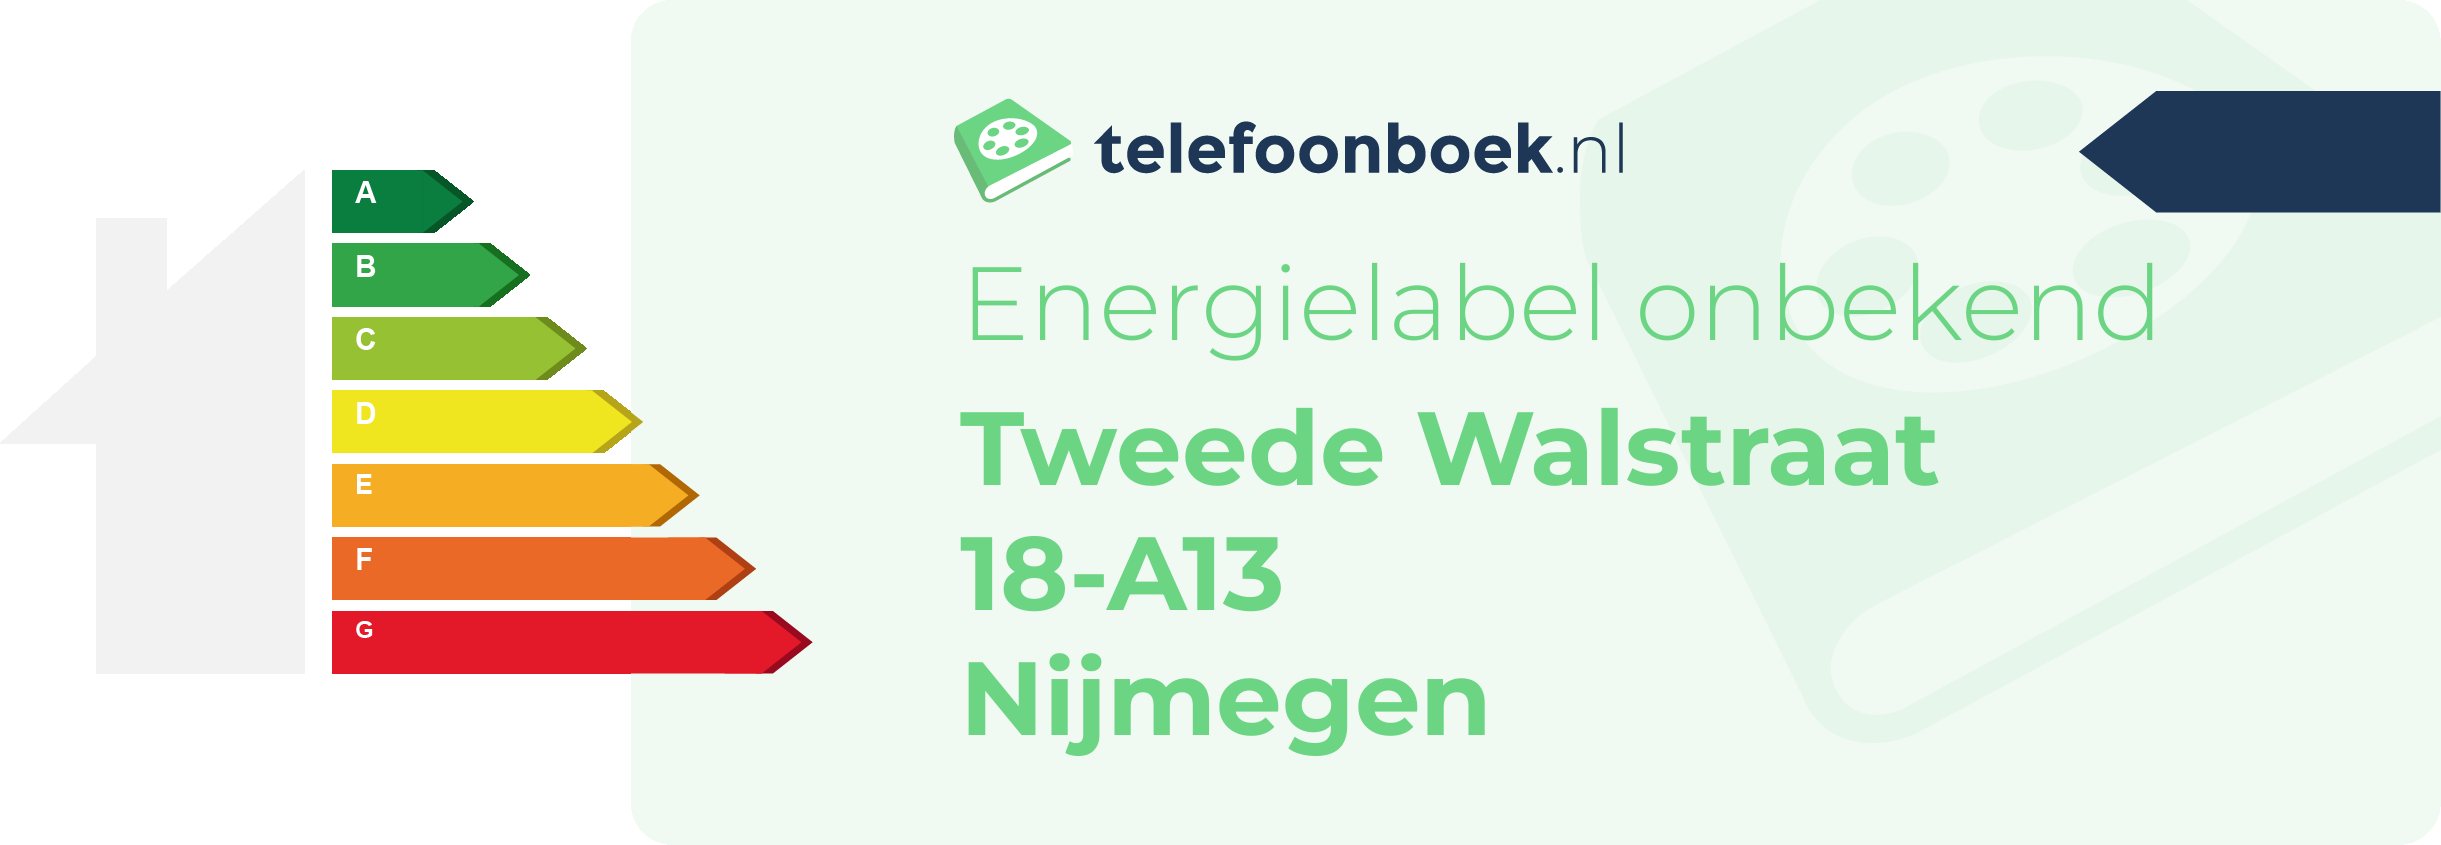 Energielabel Tweede Walstraat 18-A13 Nijmegen